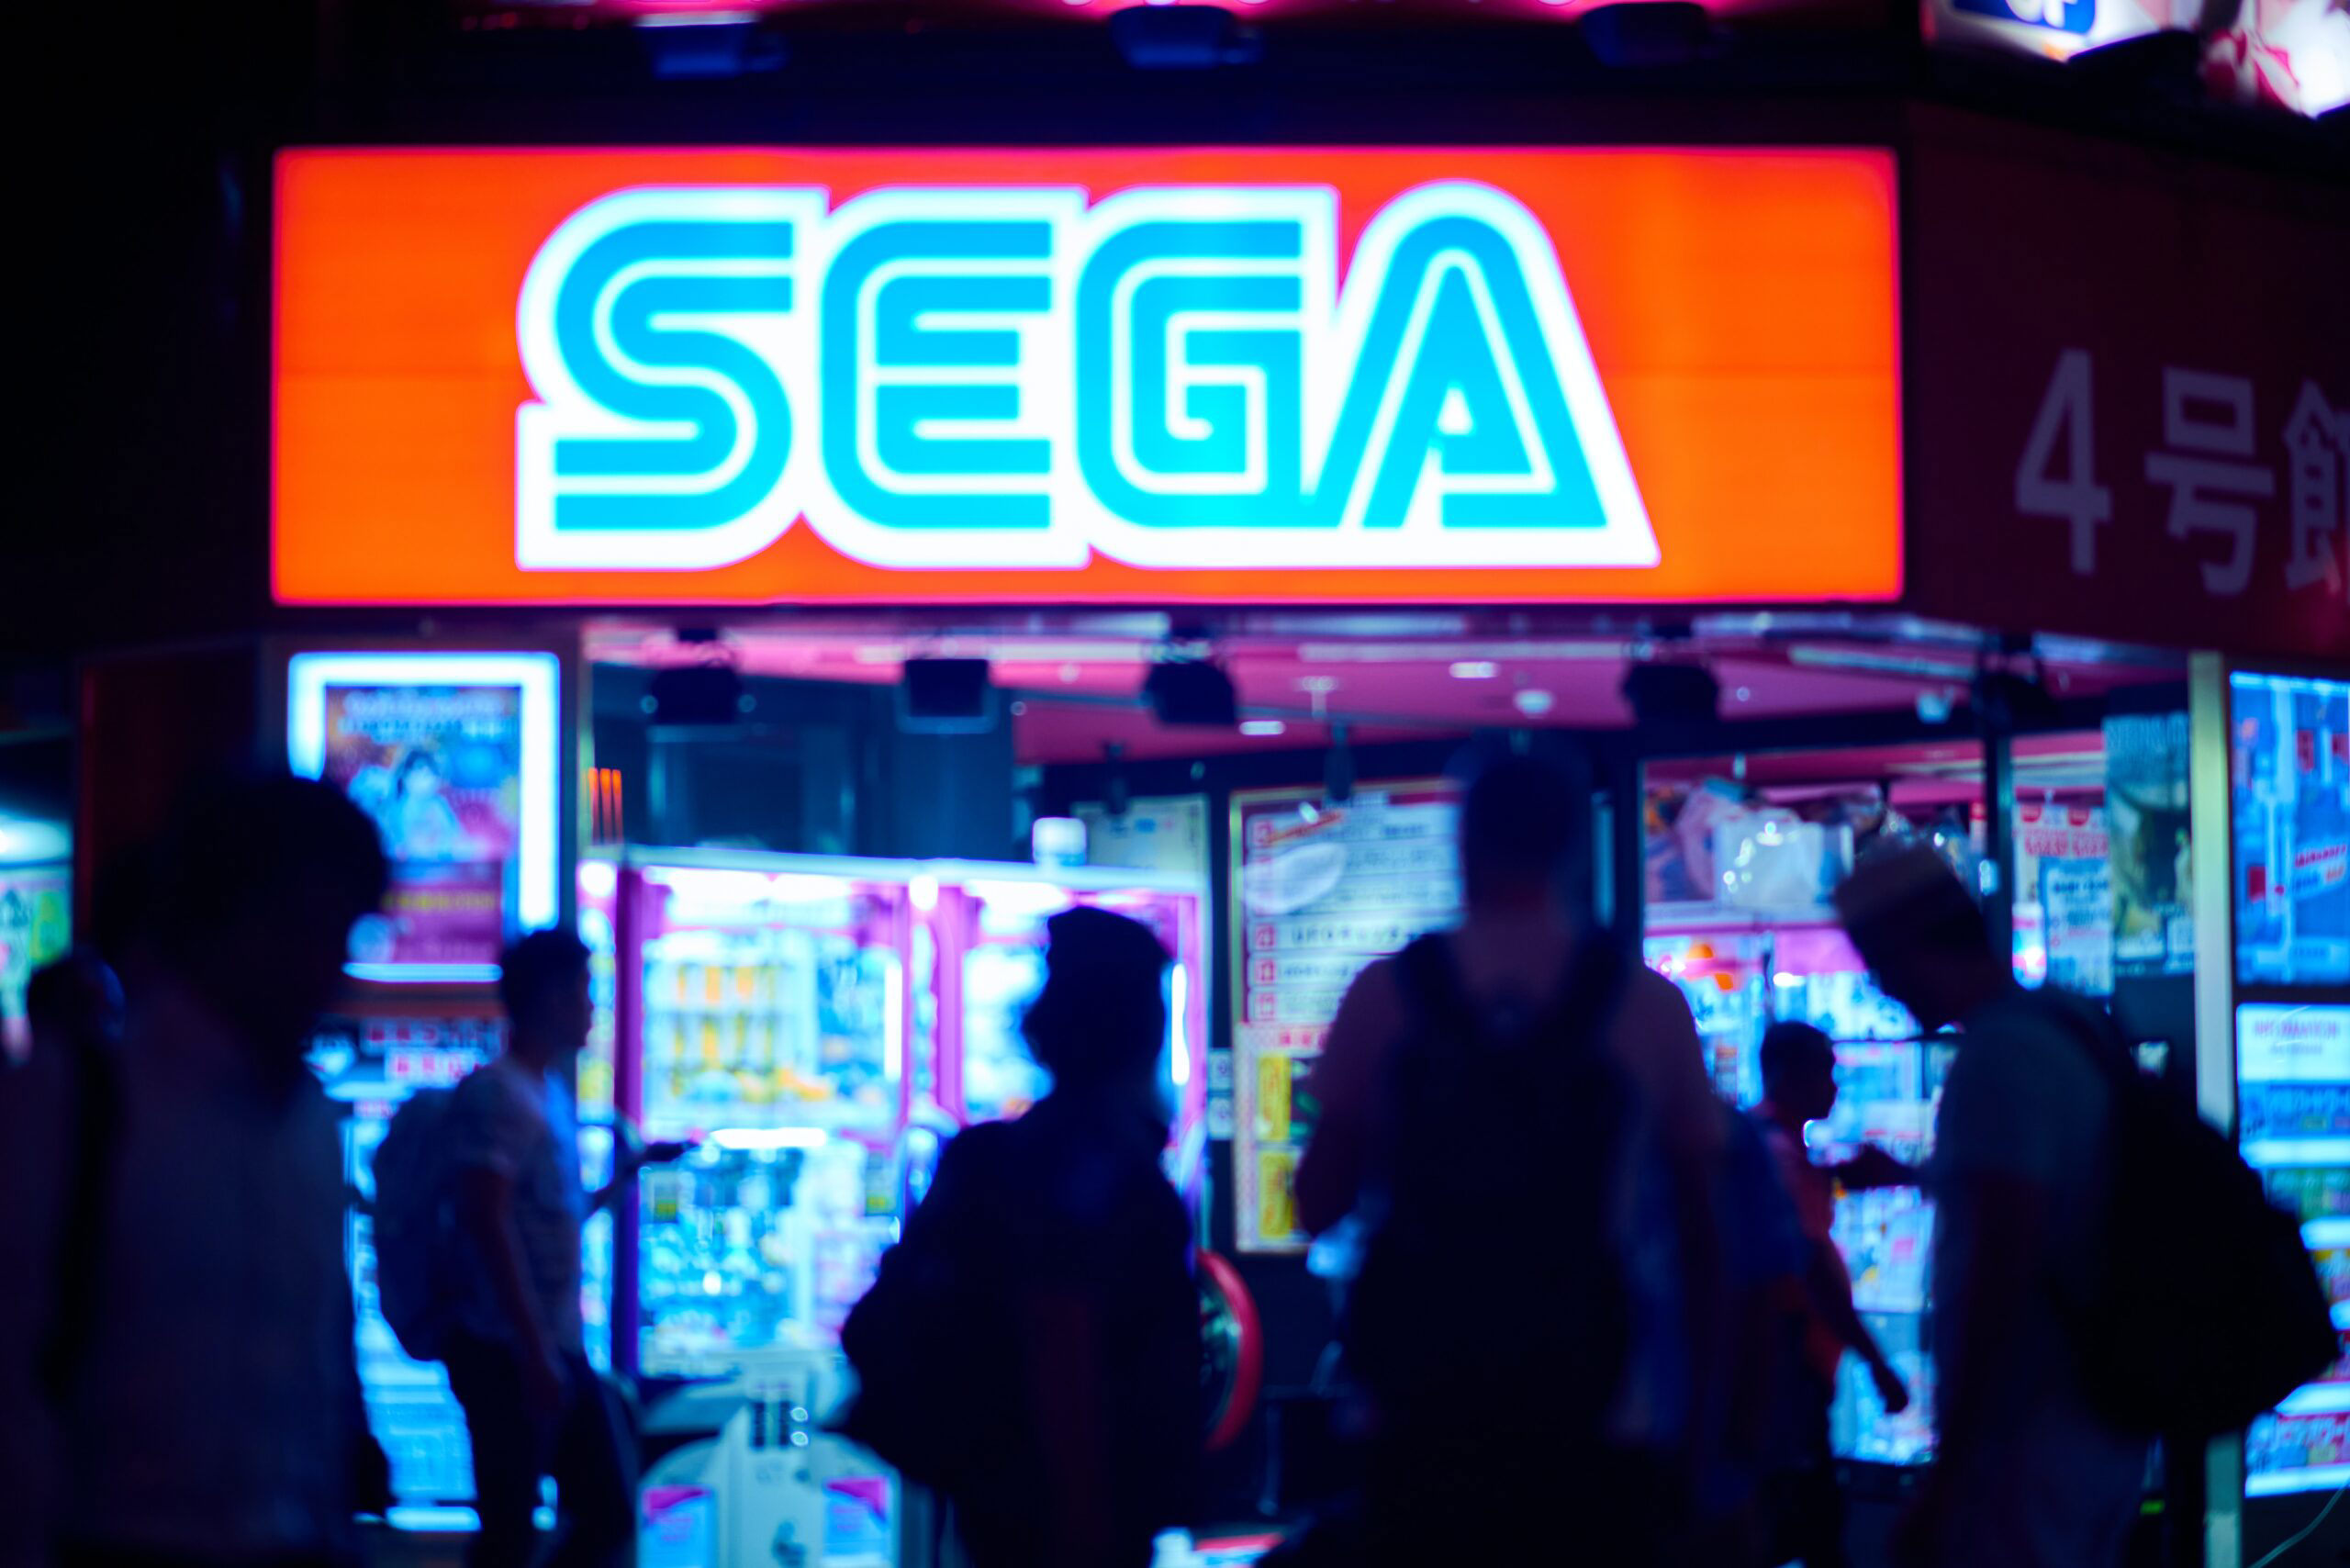 Sega Showcases Revival Of Classic Games At Game Awards